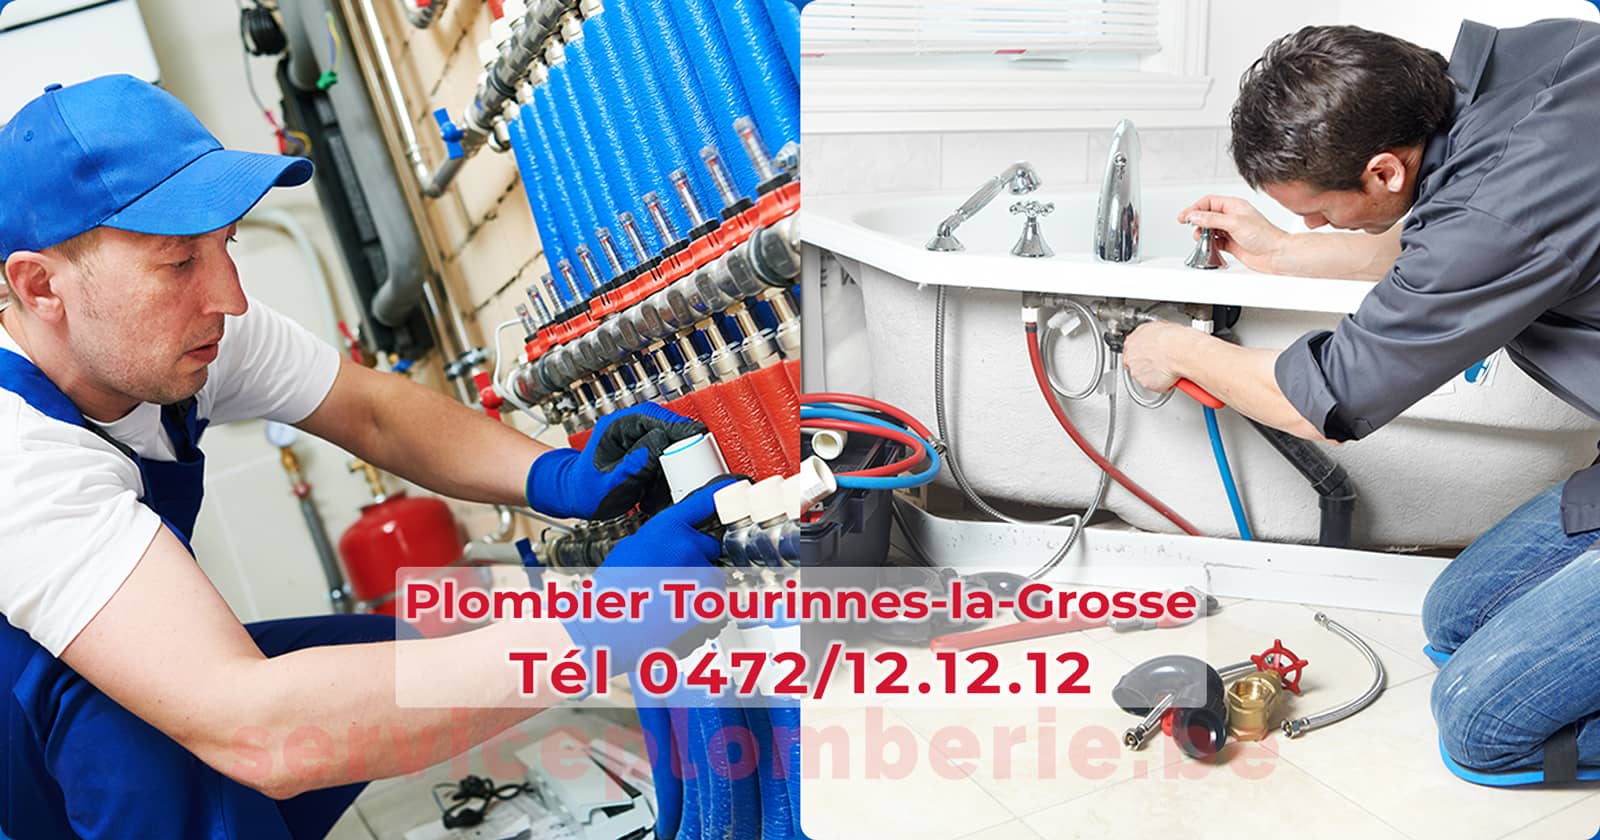 Plombier Saint-Josse Agréé Professionnel Service Plomberie Tél 0472/12.12.12